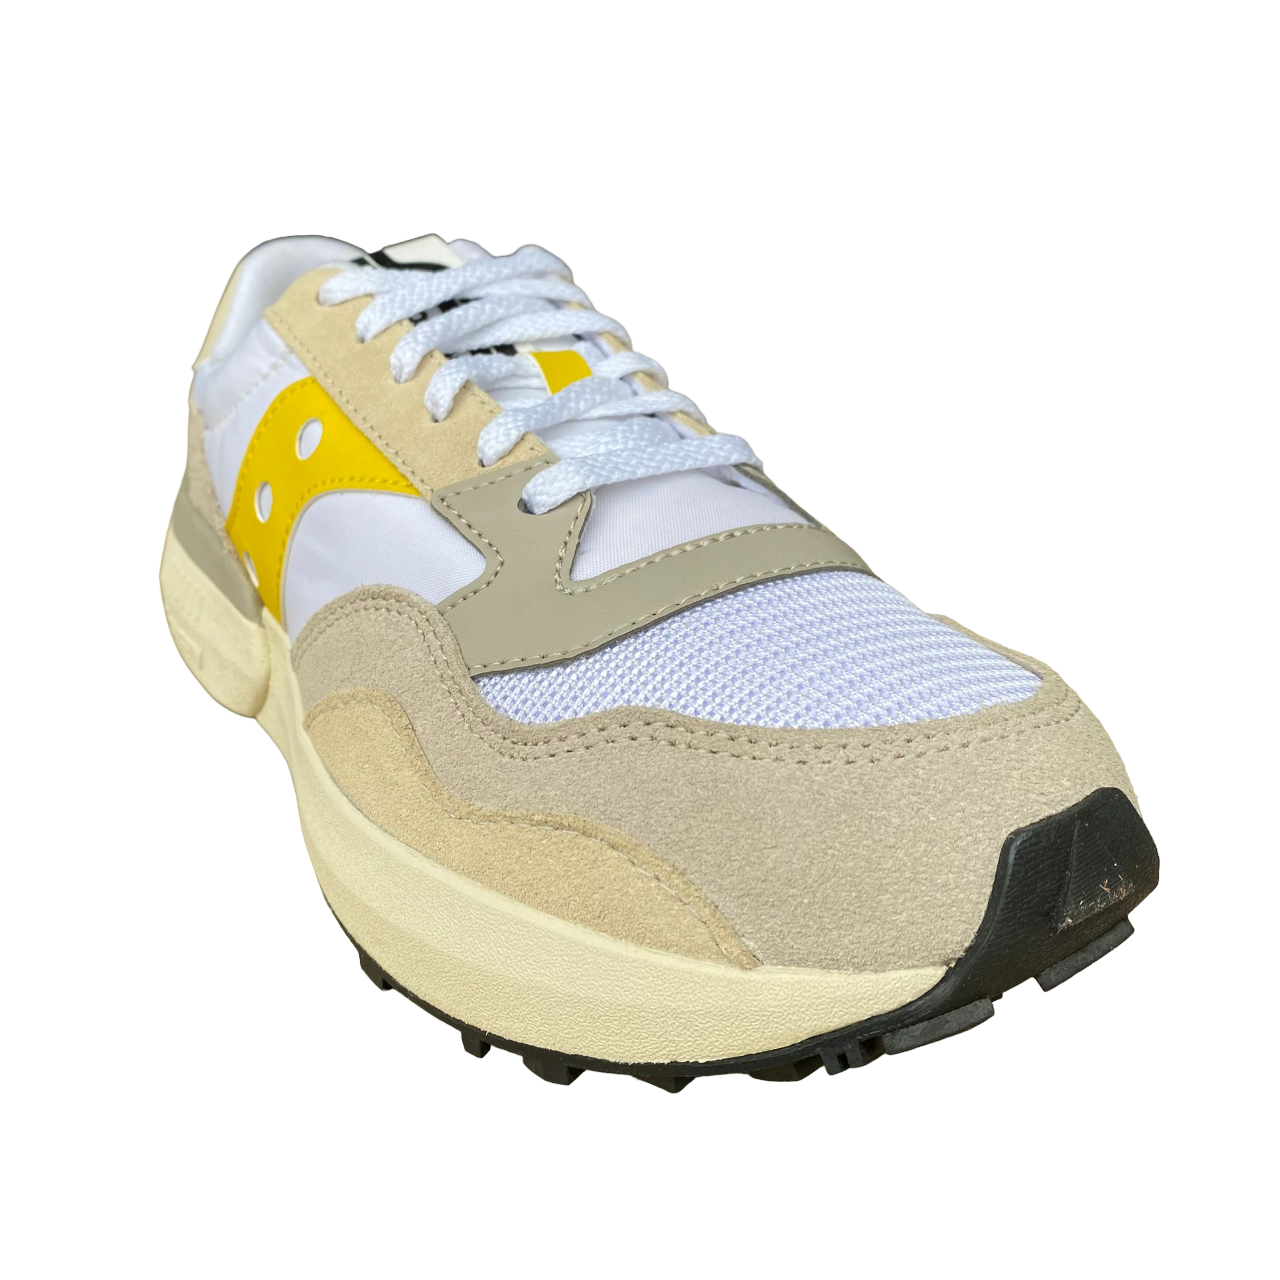 Saucony Originals men&#39;s sneakers shoe Jazz NXT S70790-16 white yellow